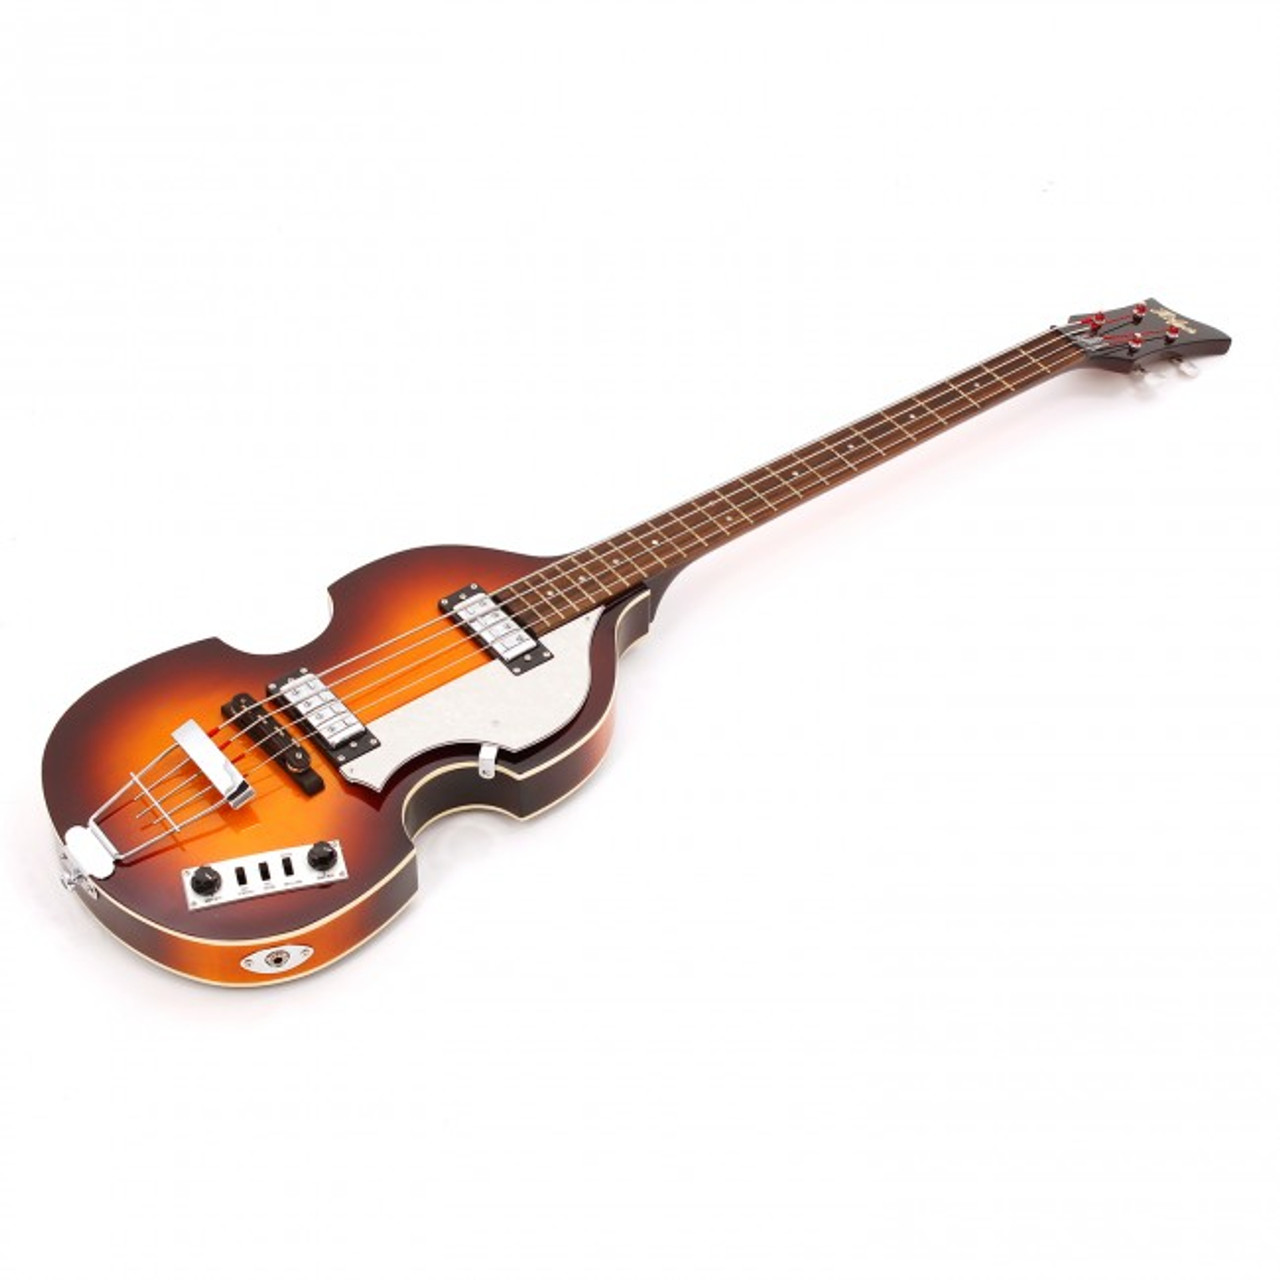 Hofner 01-HI-BB-SB-0 Ignition Violin Bass, Sunburst, With Case